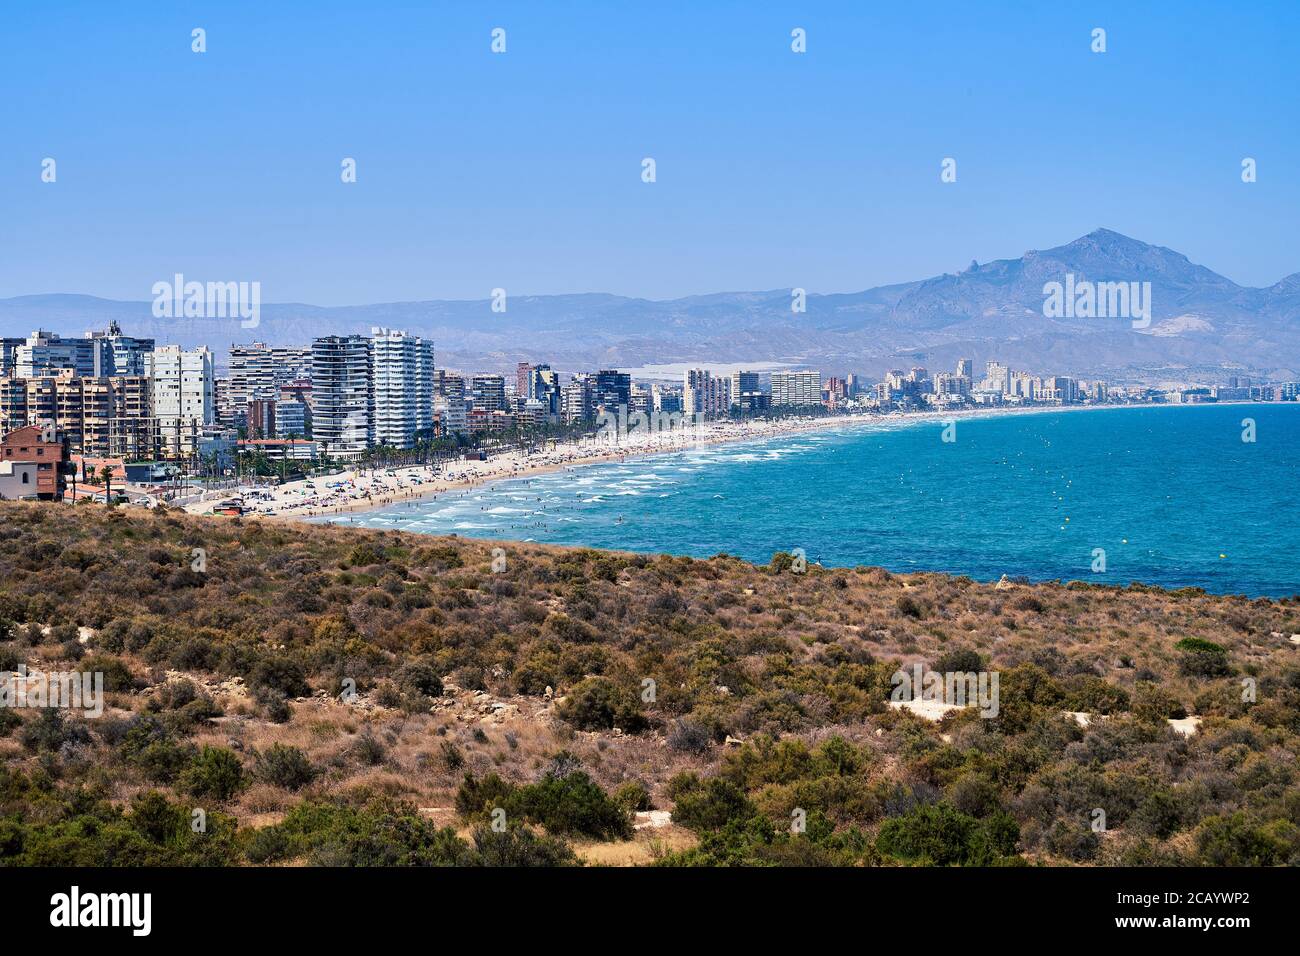 La vista desde el cabo a través de la Playa de San Juan con las montañas detrás, Alicante, España, Europa, julio de 2020 Foto de stock